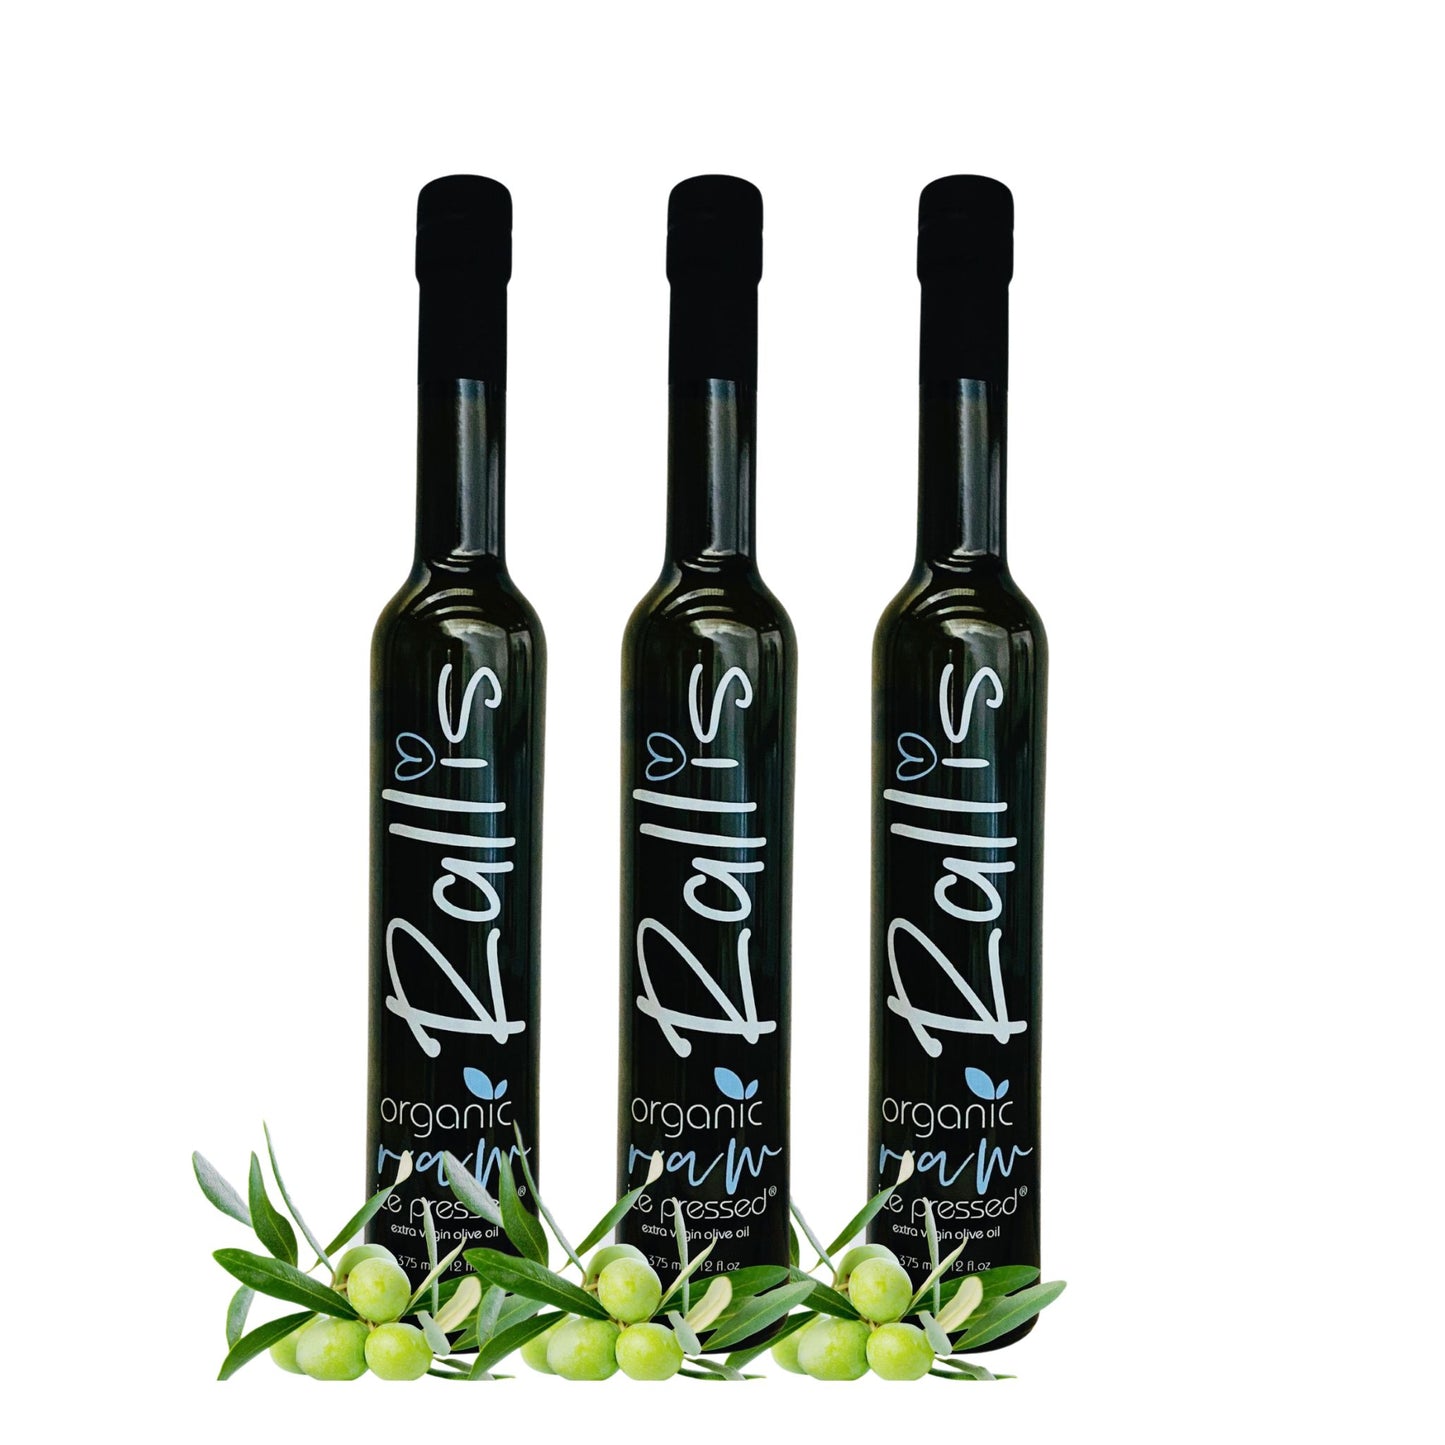 Rallis Olive Oil Ice Pressed Organic 3 Pack Bundle